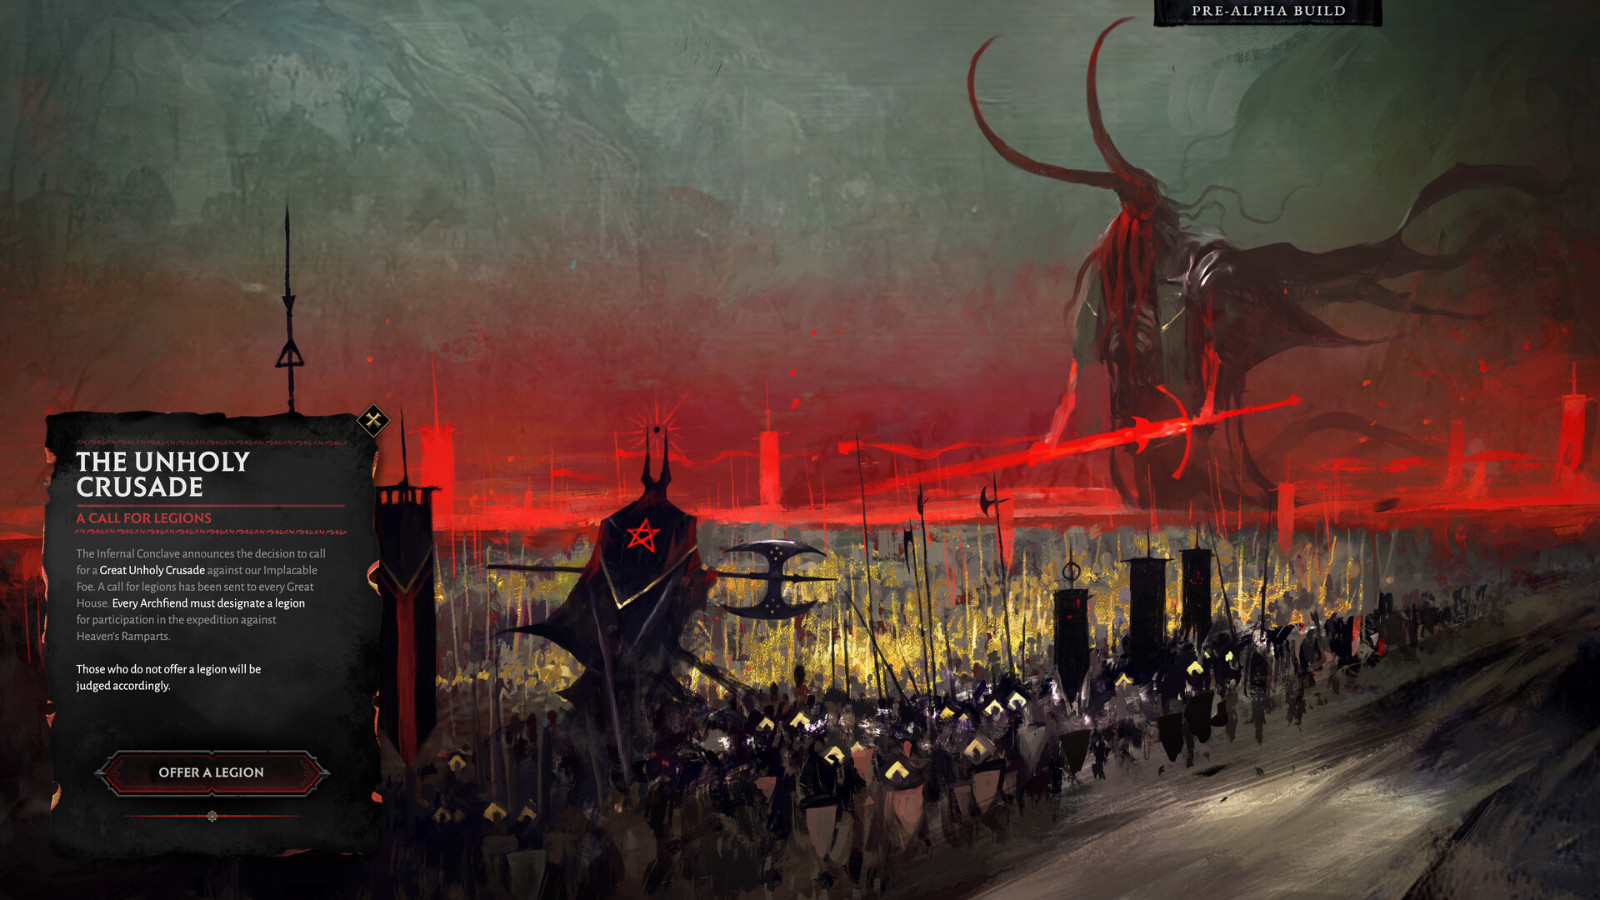 回合制大型策略游戏《地狱王座》登录Steam页面 该游戏将支持简繁中文